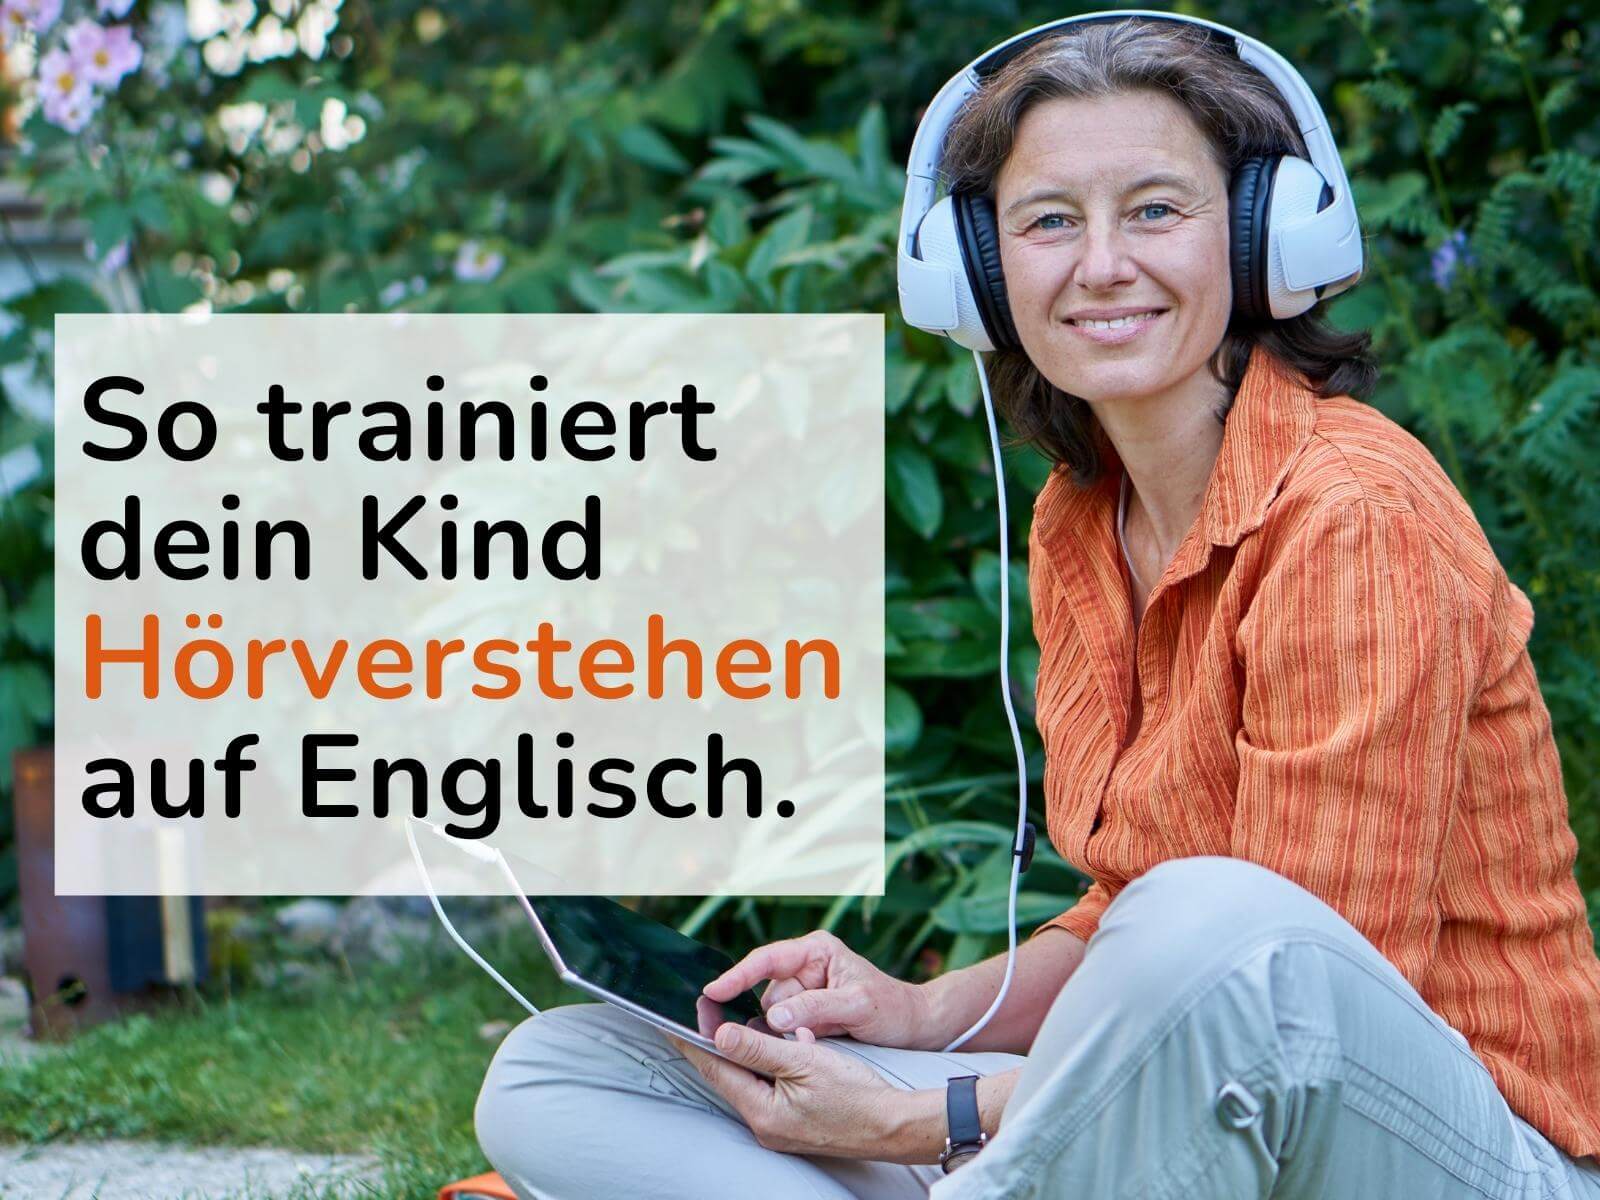 Header für Blogartikel. Eine Frau in oranger Bluse sitzt im Gras. Sie trägt große Kopfhörer. In großen Buchstaben steht daneben: So trainiert dein Kind Hörverstehen auf Englisch.